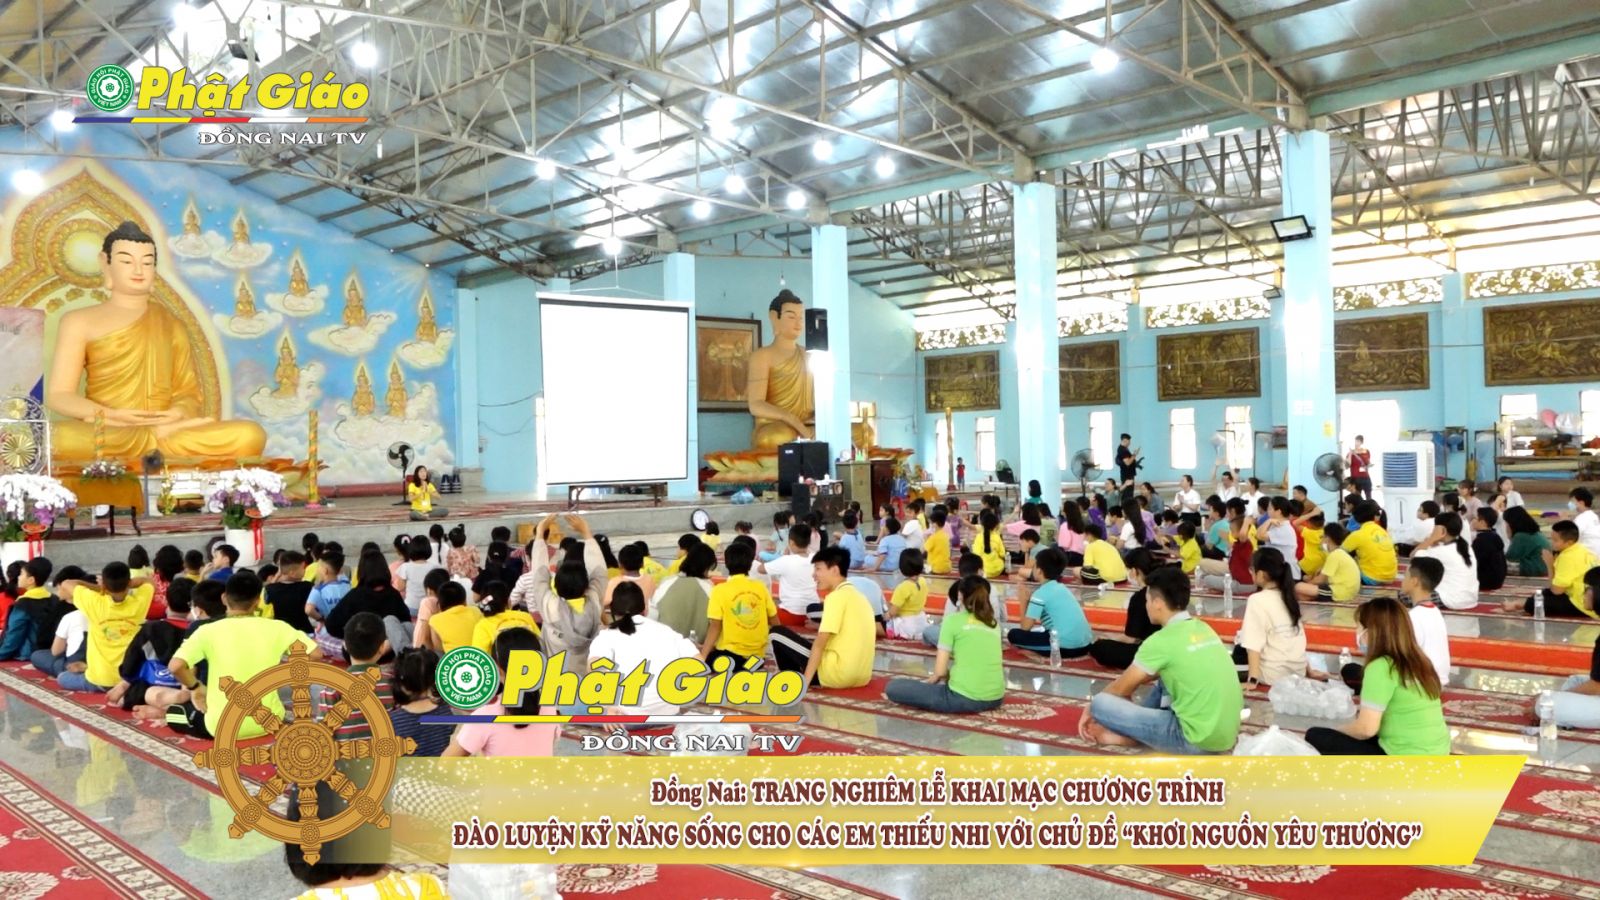 [Video] Đồng Nai: Trang nghiêm lễ Khai mạc Chương trình Đào luyện kỹ năng sống cho các em thiếu nhi với chủ đề KHƠI NGUỒN YÊU THƯƠNG' do BVH PG Sen Vàng tổ chức tại Thiền viện Phước Sơn.